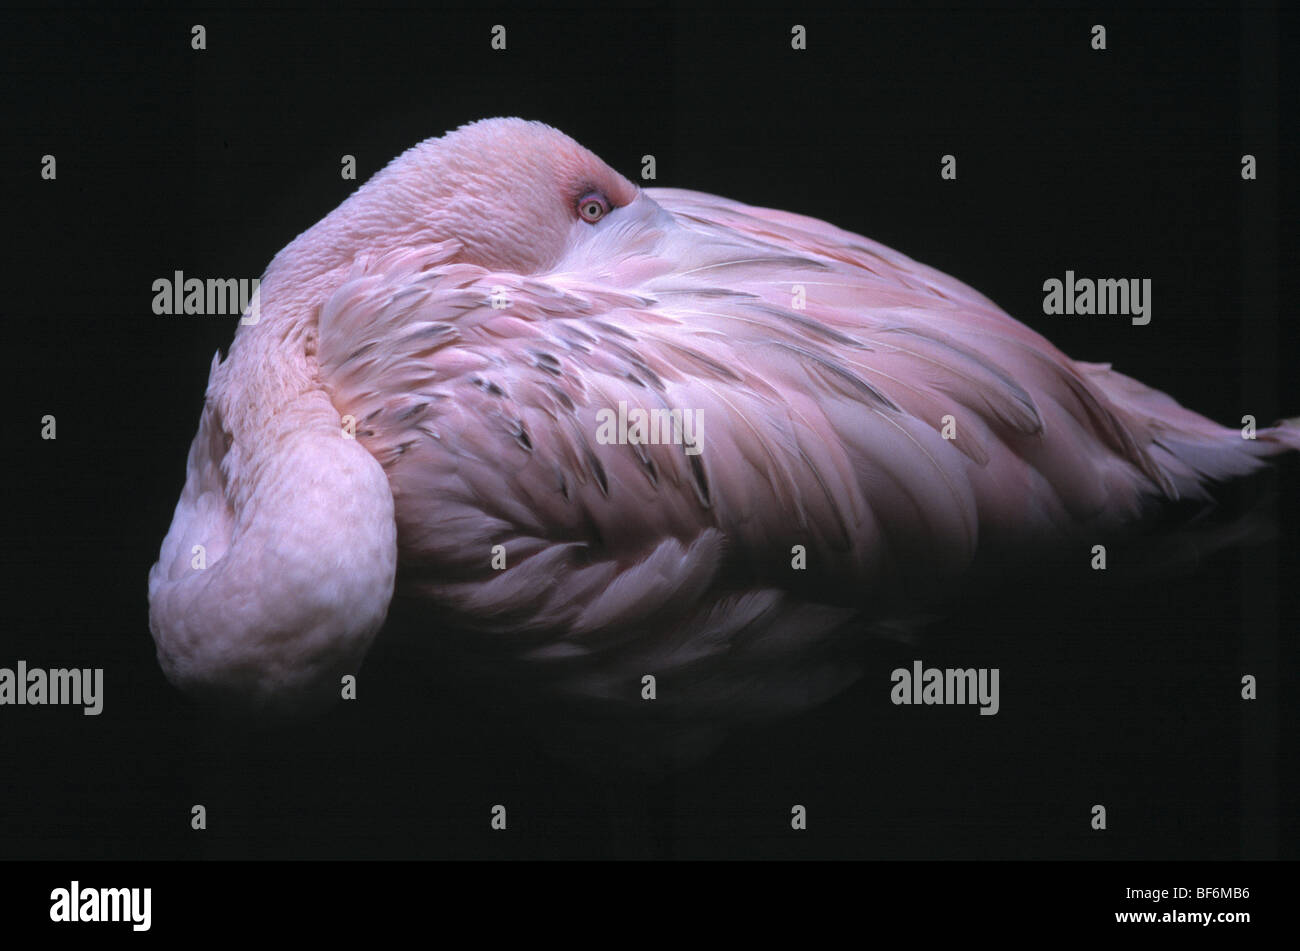 flamingo, phoenicopteriformes Stock Photo